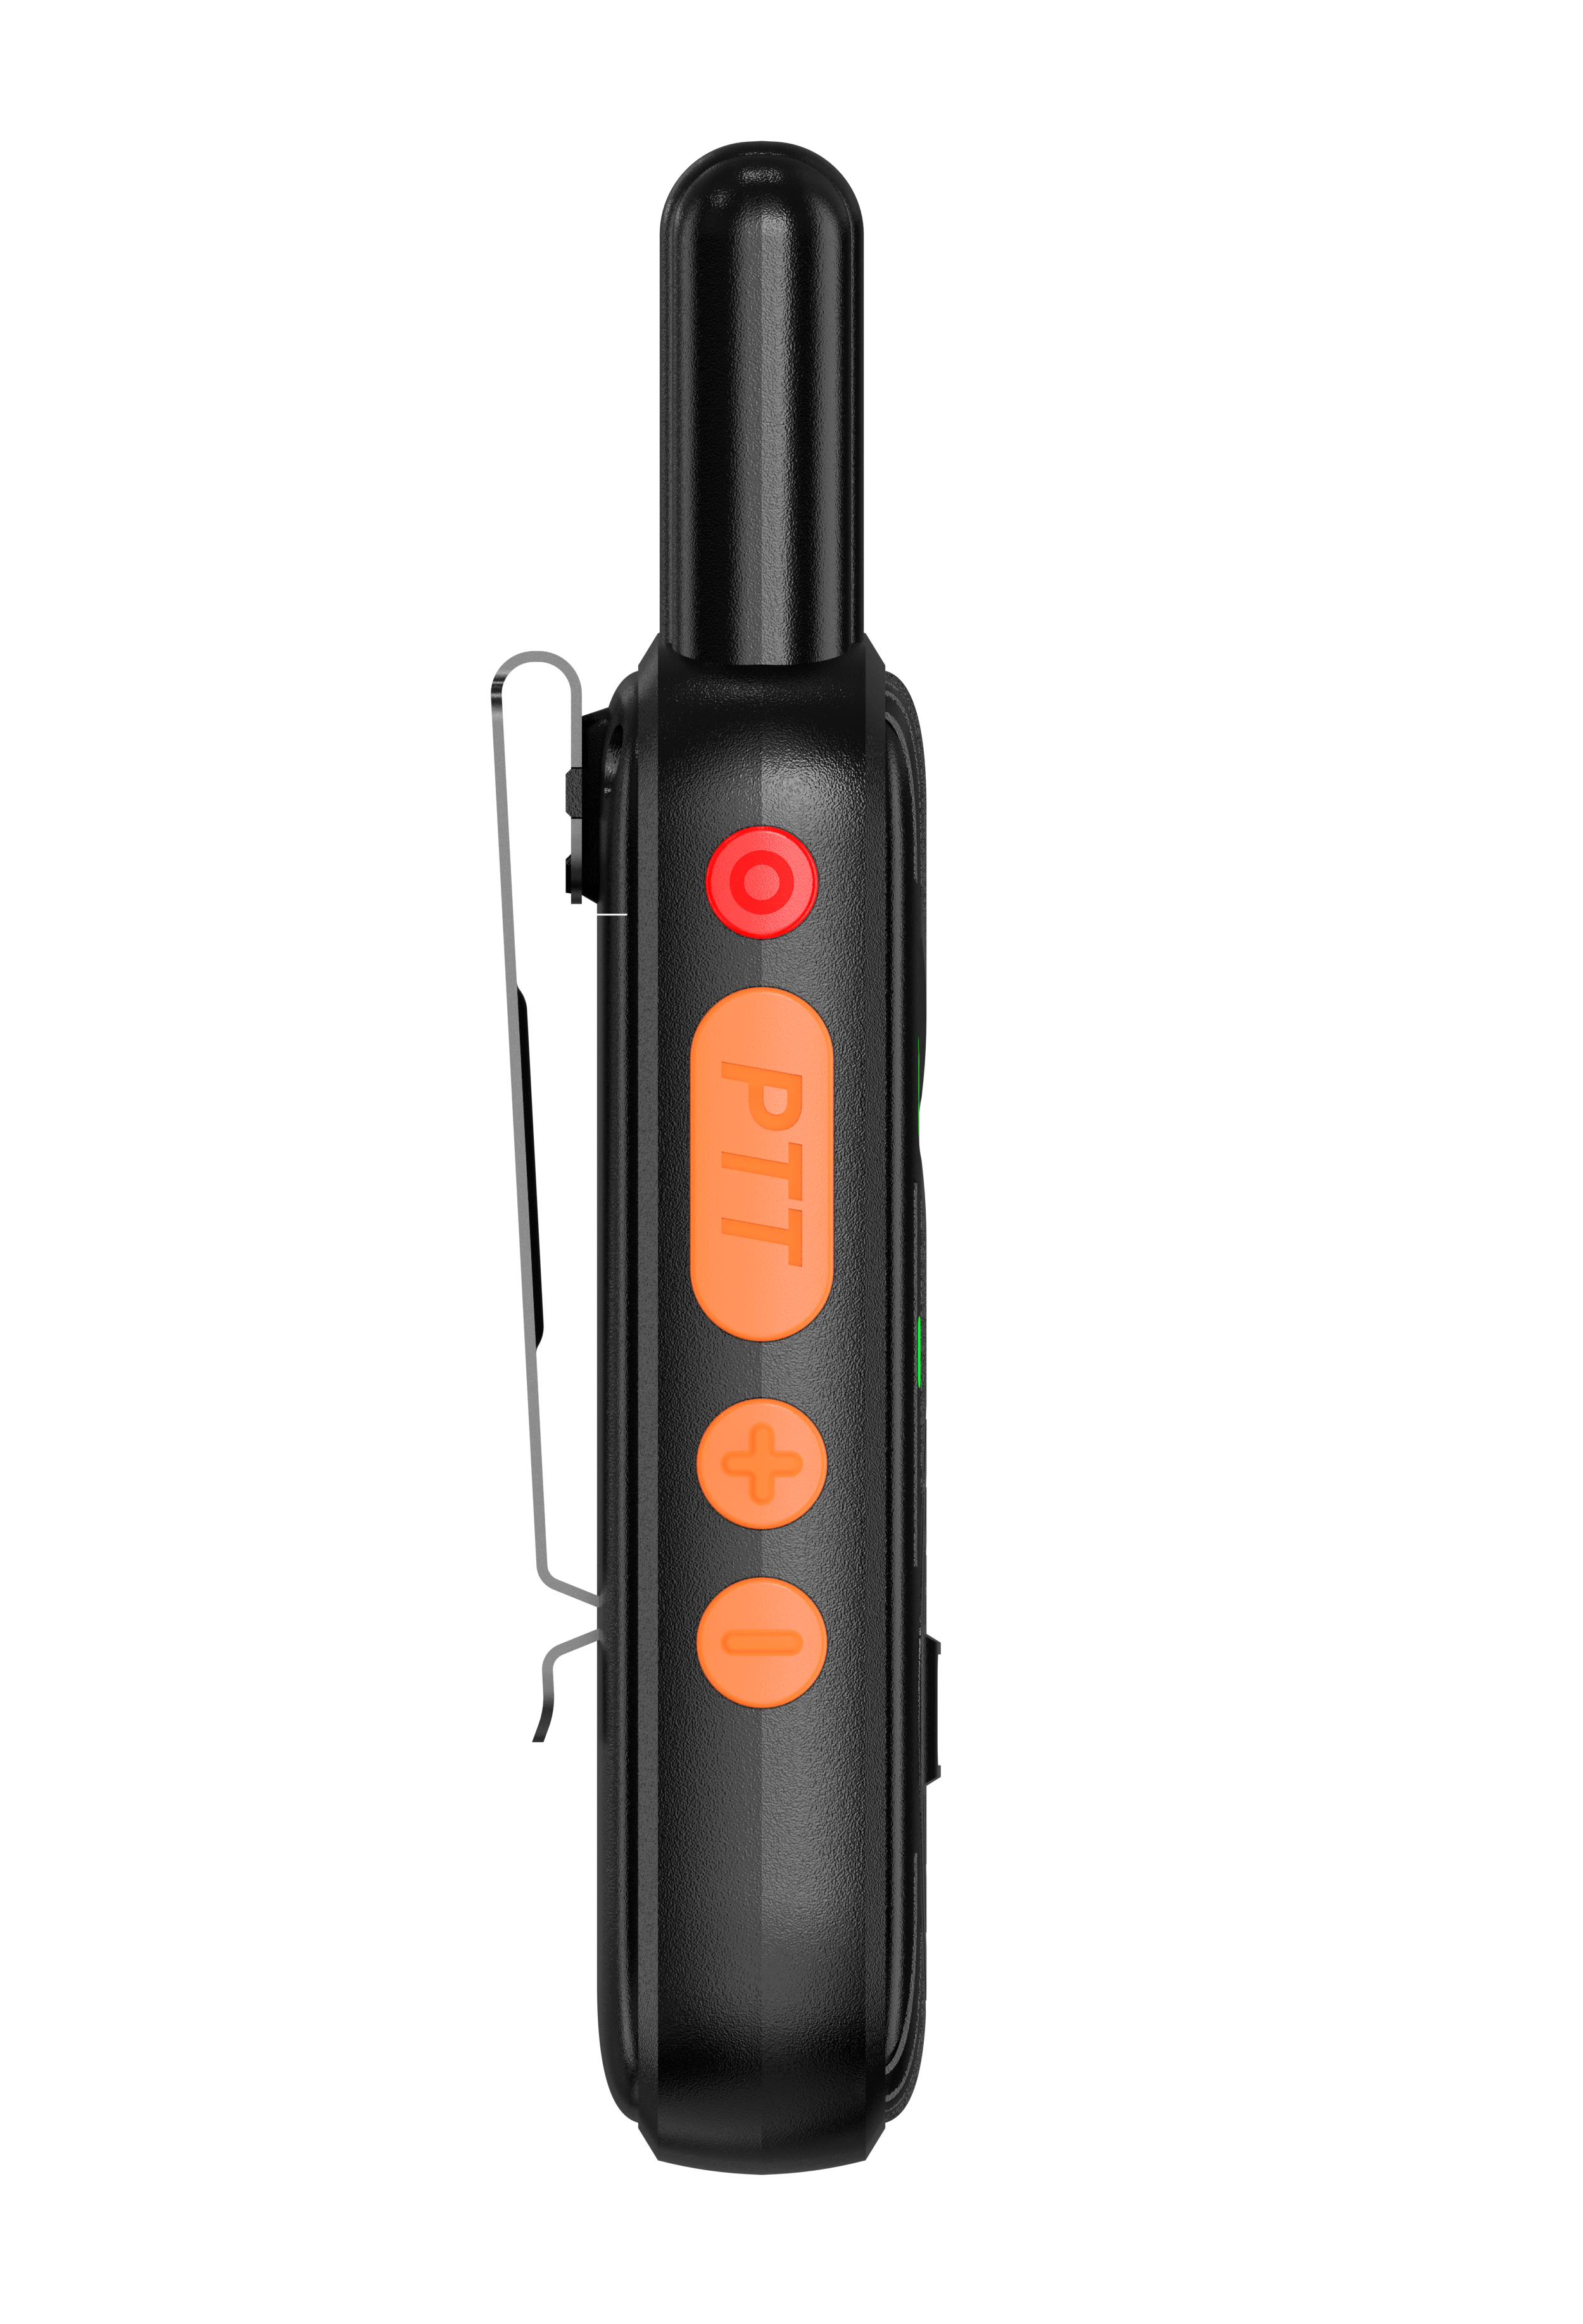 Daytech Rechargeable Wireless Intercoms 21 Channel walkie-talkie Battery Powered 1.5 Mile Long Range Wireless Intercom System